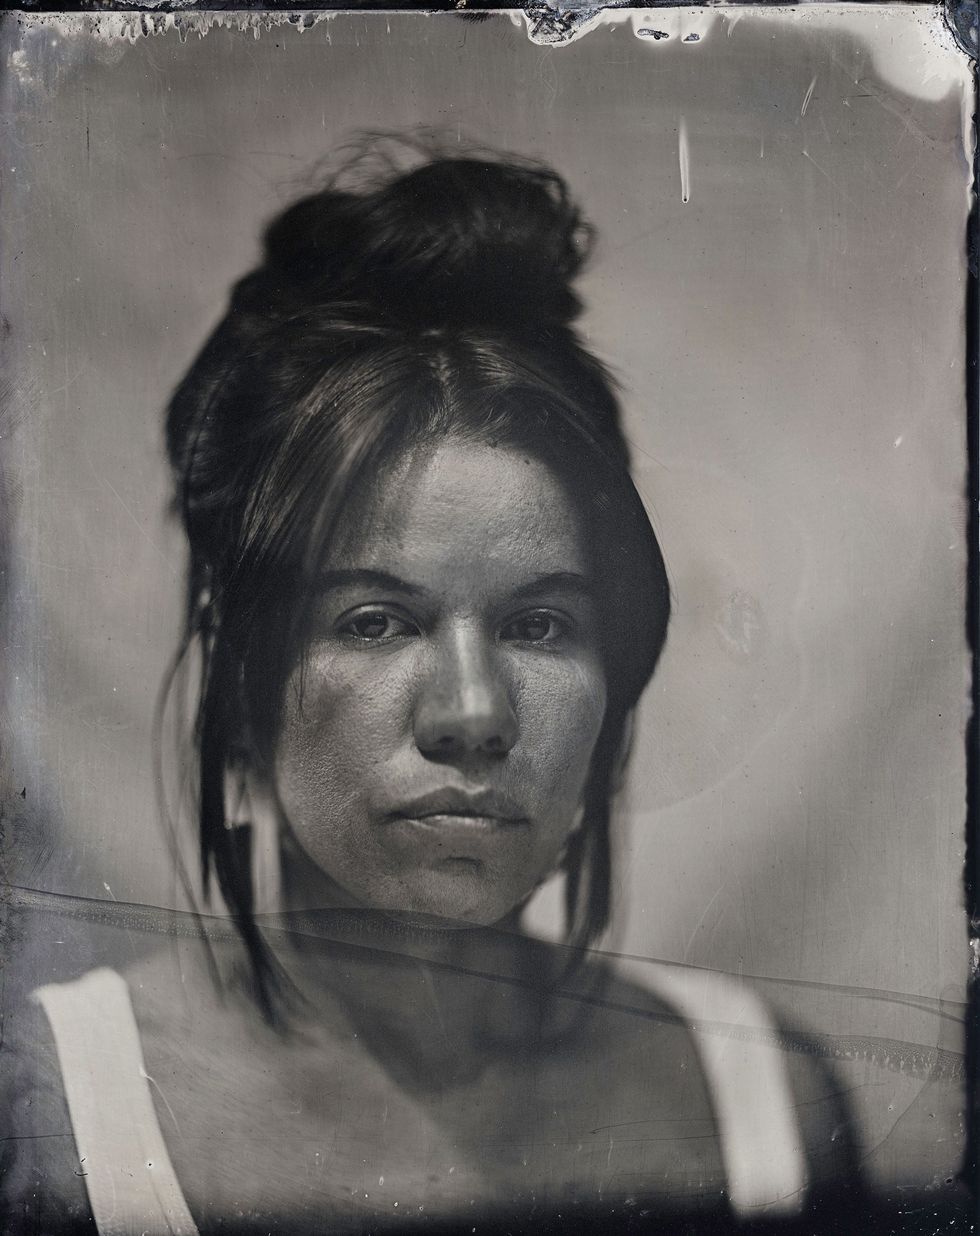 Amber Morningstar Byars een Choctawkunstenaar en activist studeerde onlangs af aan het Institute of American Indian Arts en wil inheemse gemeenschappen op een gedreven manier recht doen